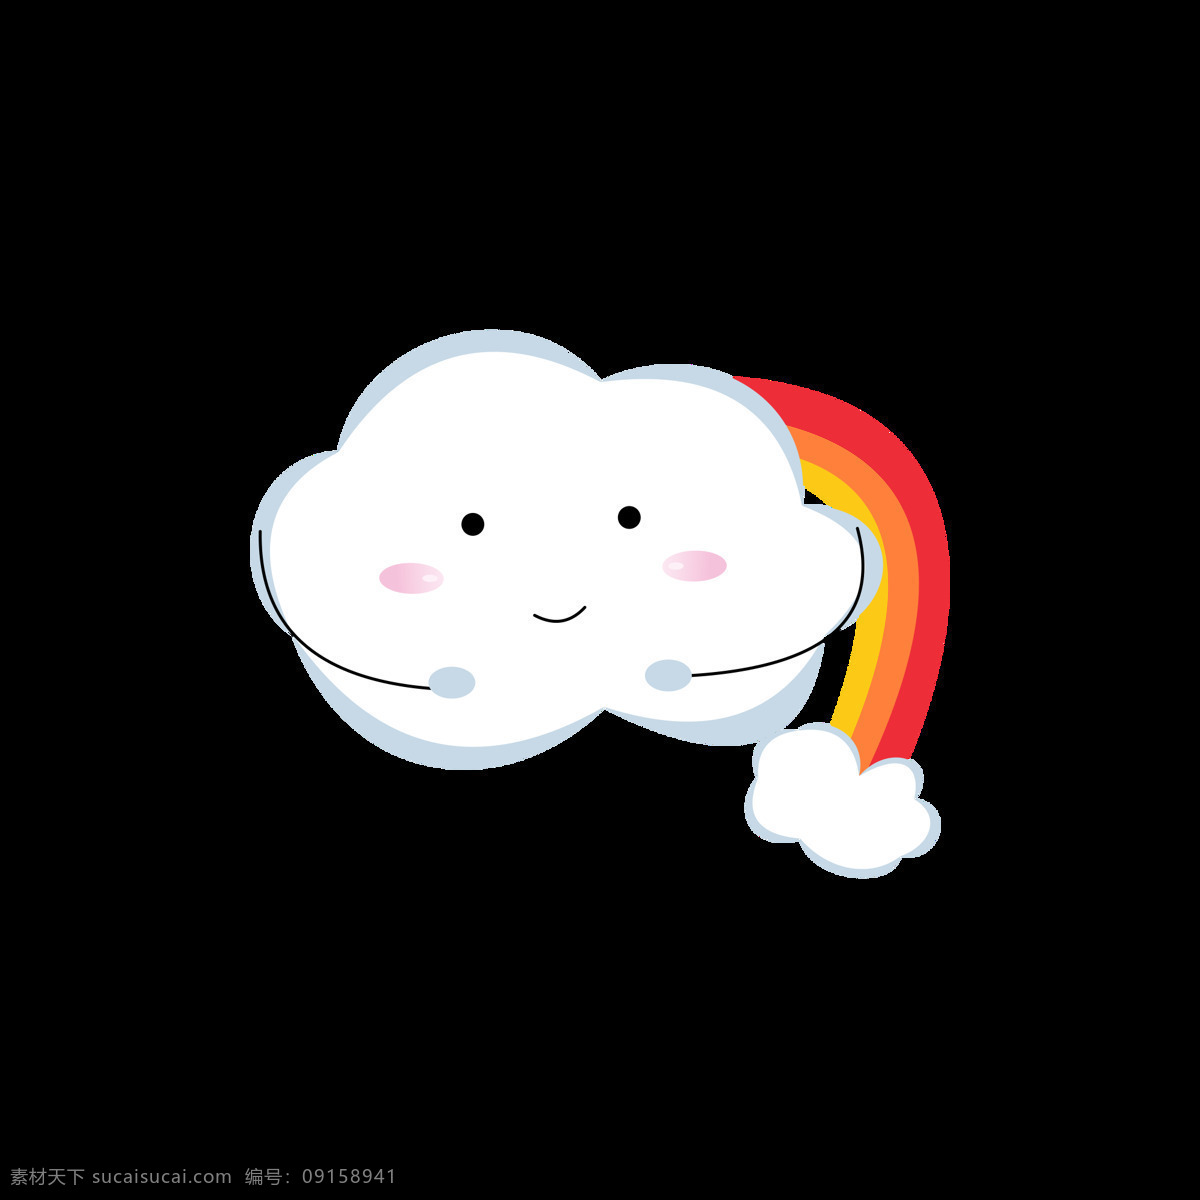 原创 白云 元素 卡通 可爱 天气 表情 包 云朵 开心 彩虹 元素设计 表情包